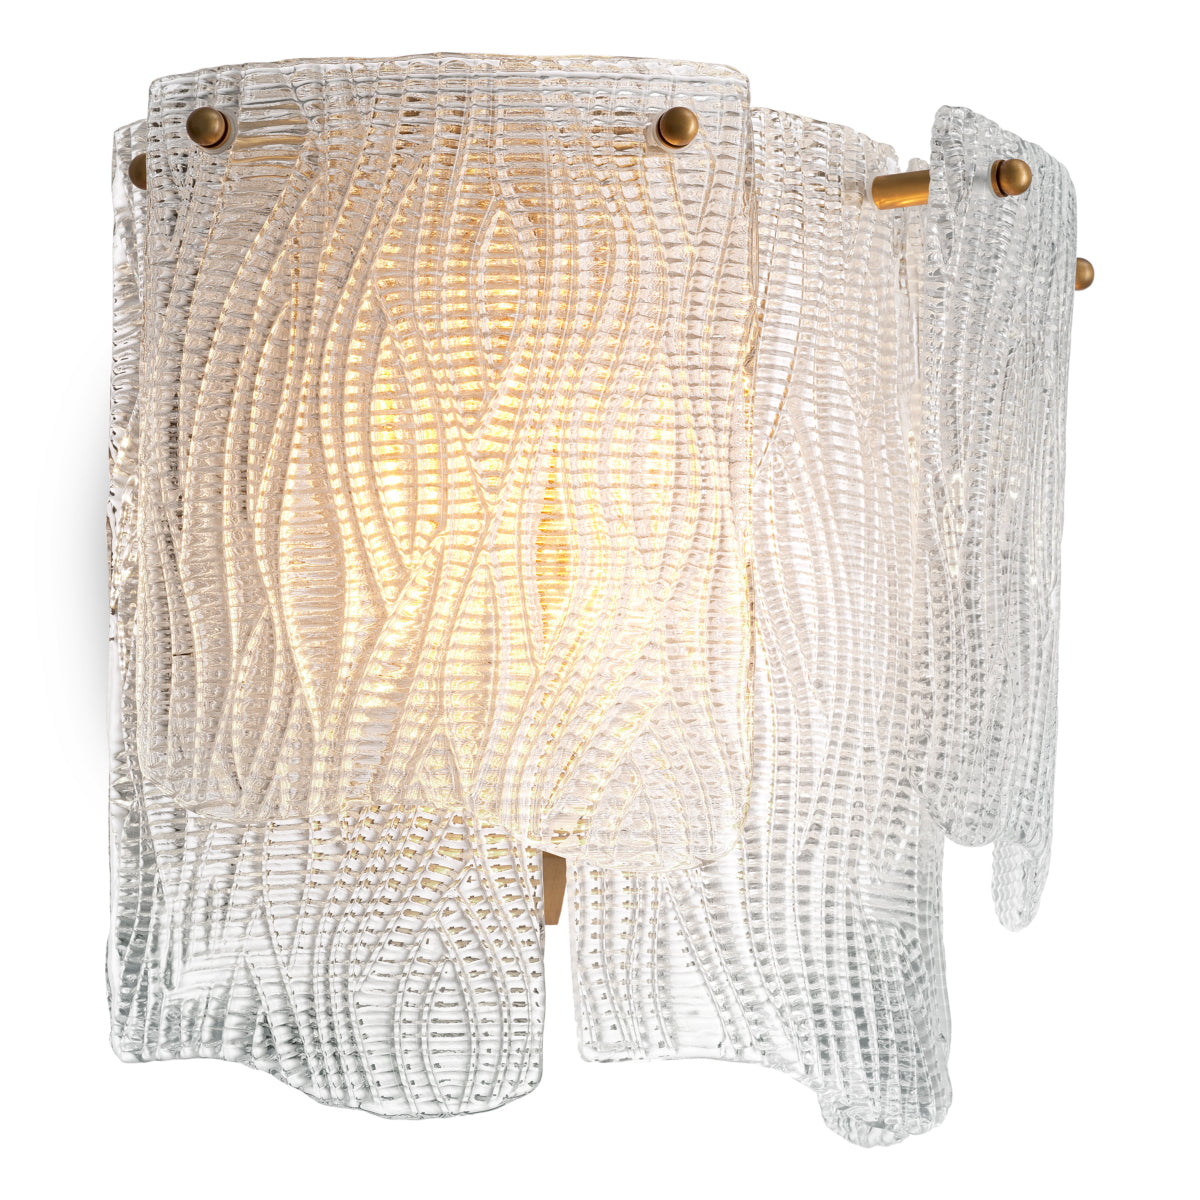 Wand lamp Eichholtz Asinara clear textured